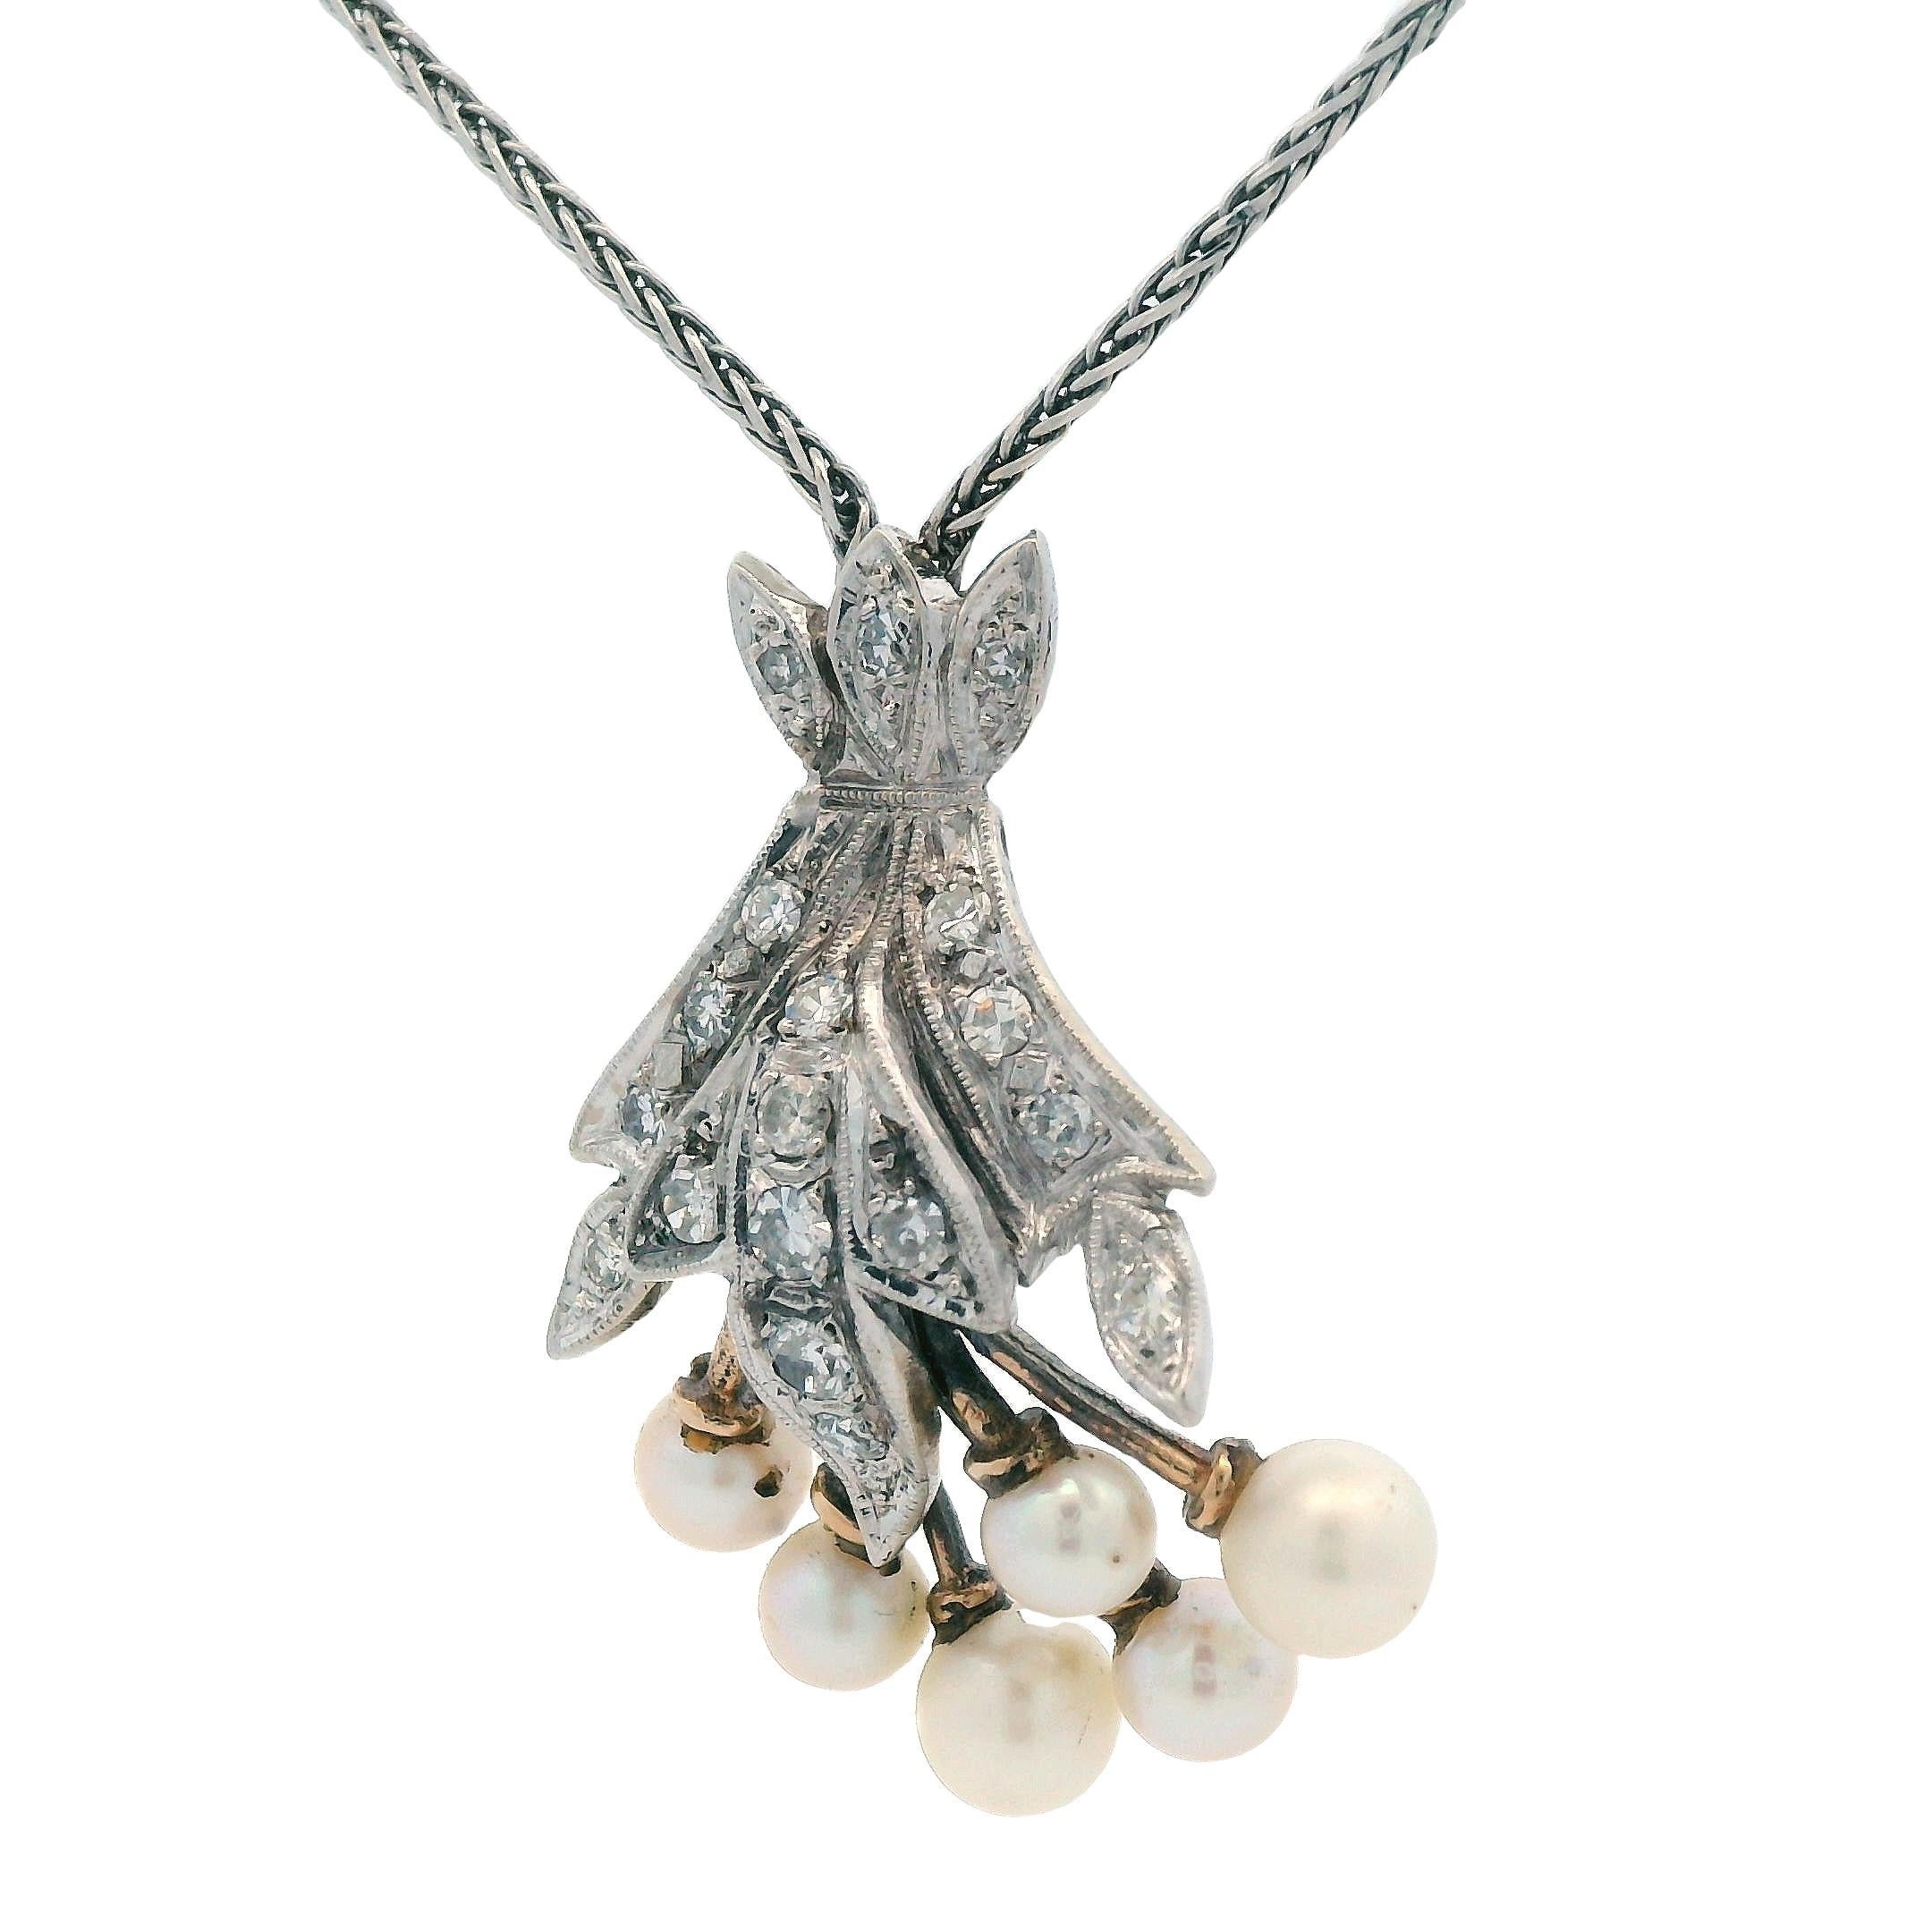 Ce superbe collier pendentif est réalisé en or blanc 14k avec un diamant de taille ronde et des perles de culture blanches. Ce collier est l'article de collection parfait pour tous ceux qui cherchent à ajouter un jeu de perles à leur parure, tout en